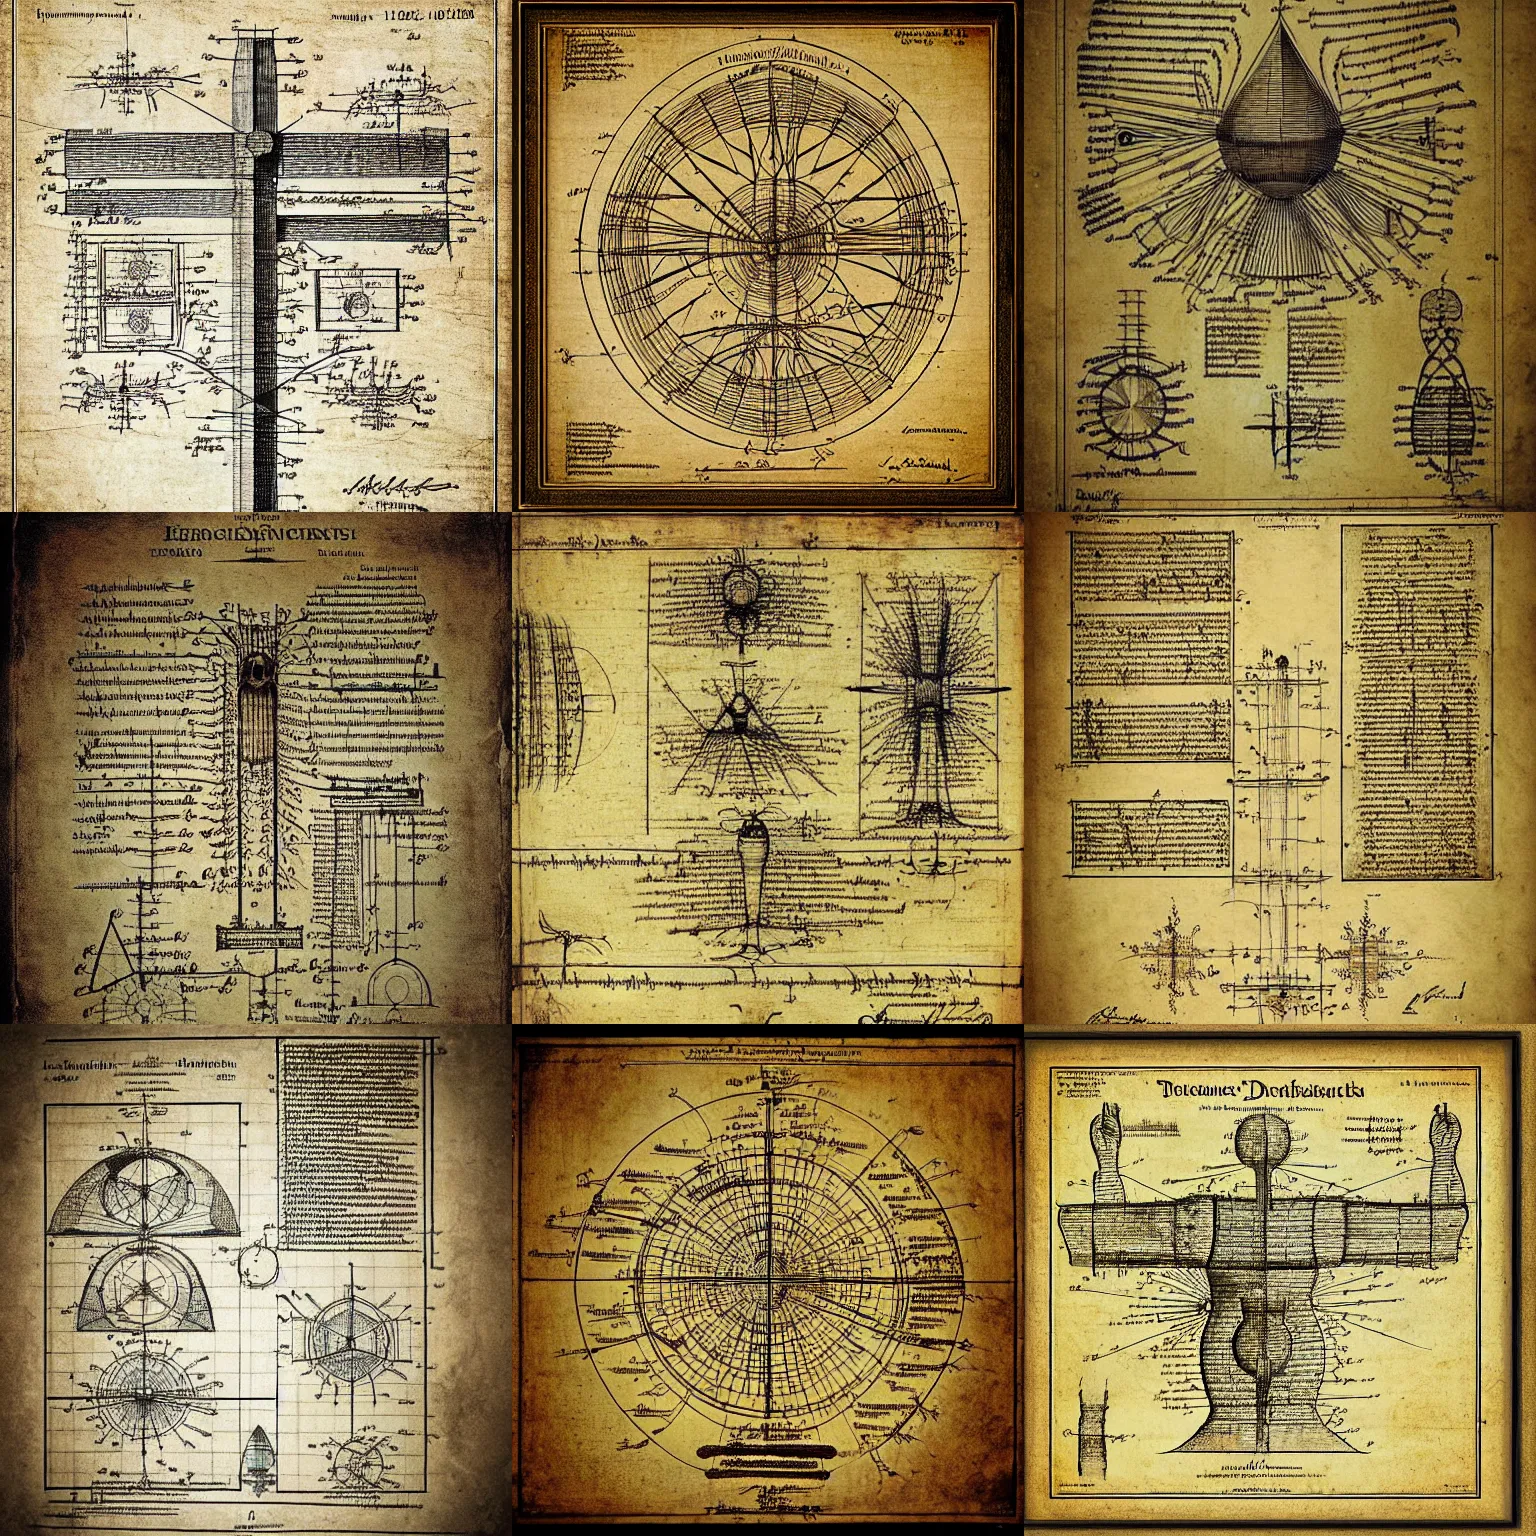 Prompt: 1 2 century scientific schematics by leonardo da vinci, for a human, blueprint, hyperdetailed vector technical documents, callouts, archviz, legend, patent registry